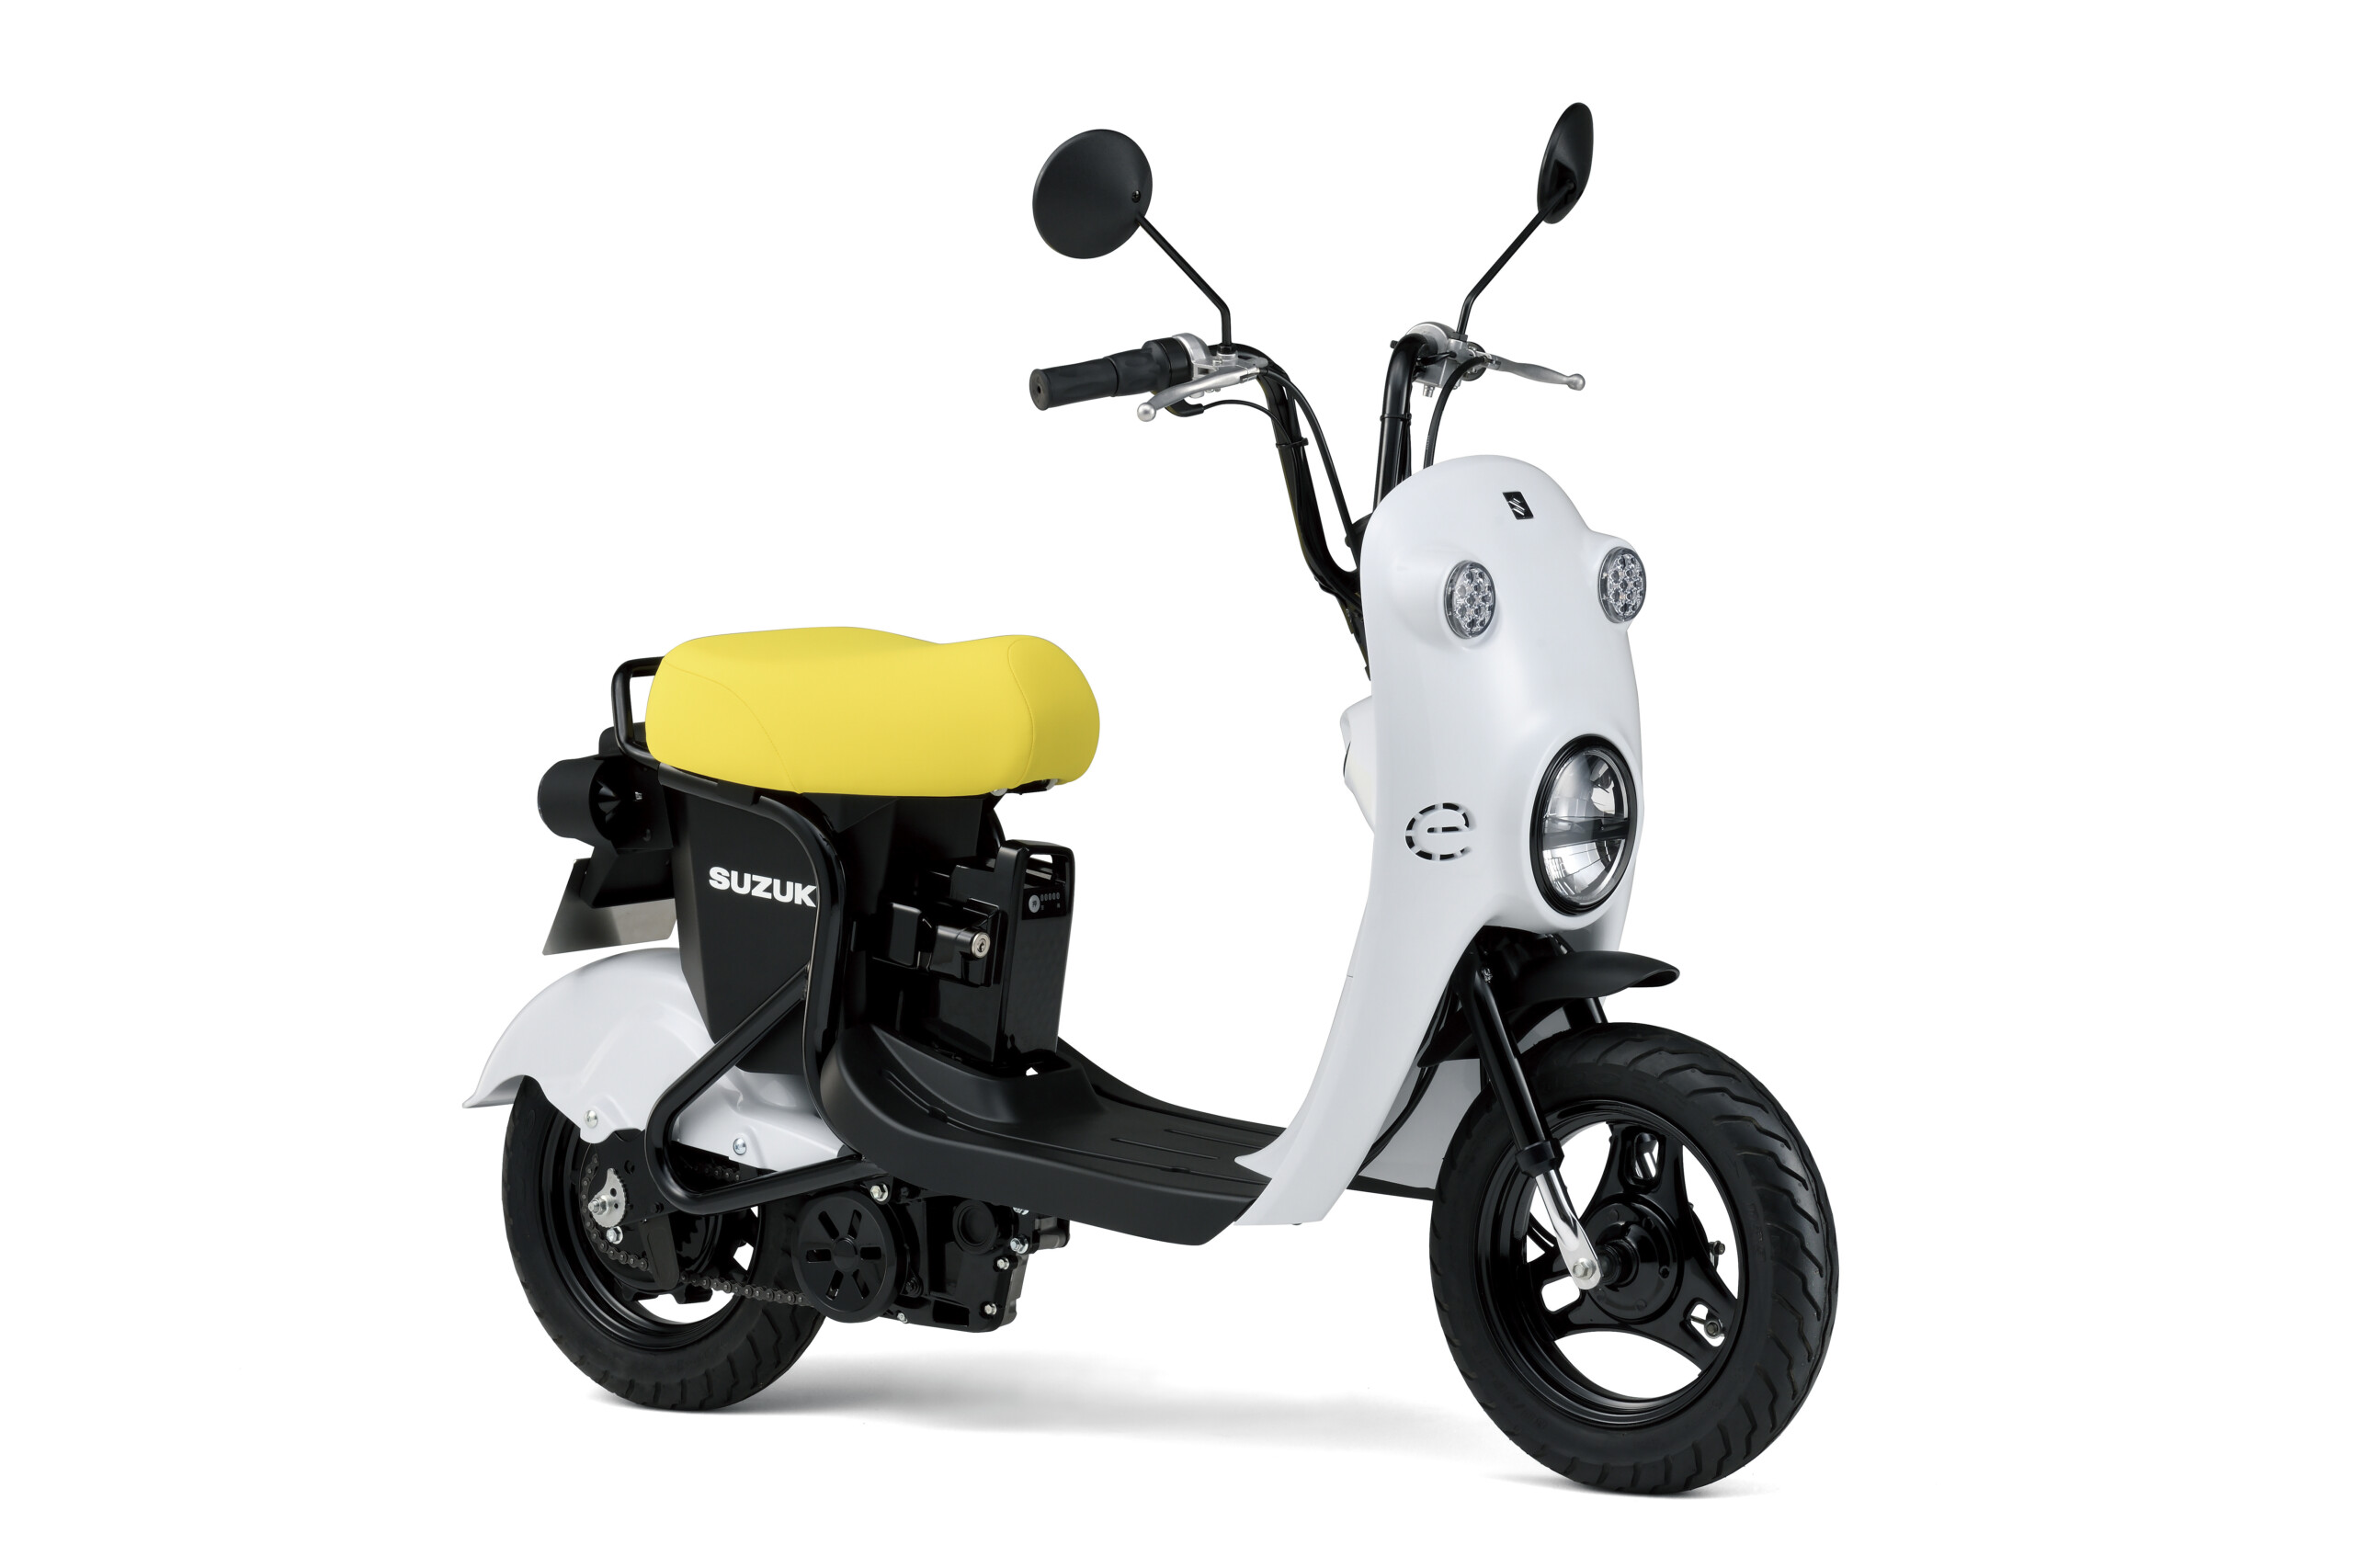 Honda dévoile son plan de motos et scooters électriques : ça donne